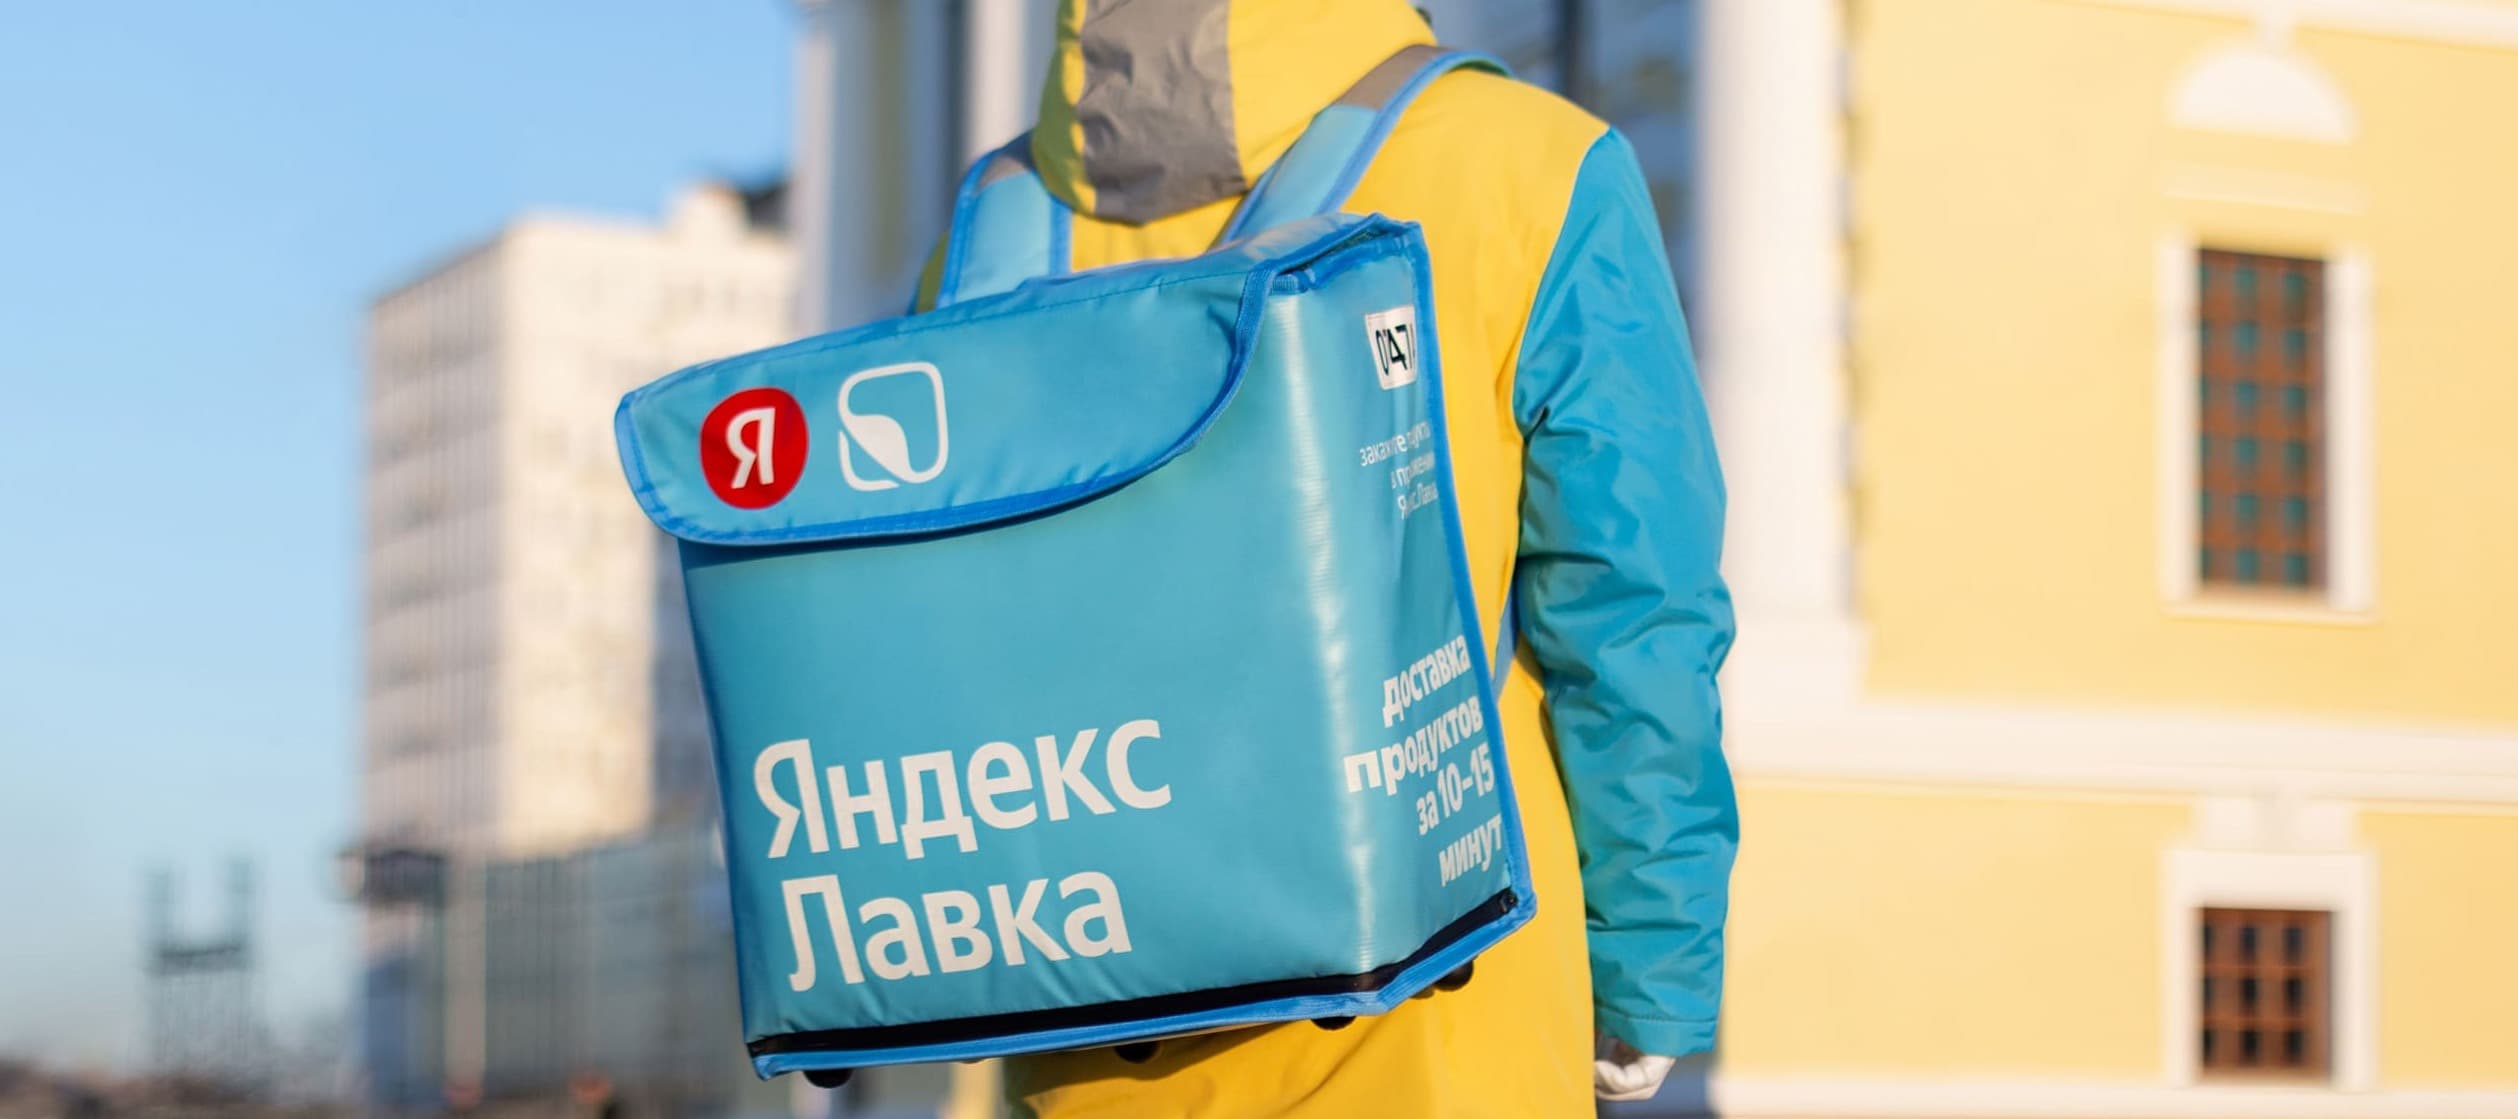 Фото новости: "Спор за «Лавку»: правообладатель бренда «В лавке» подал иск к «Яндексу»"